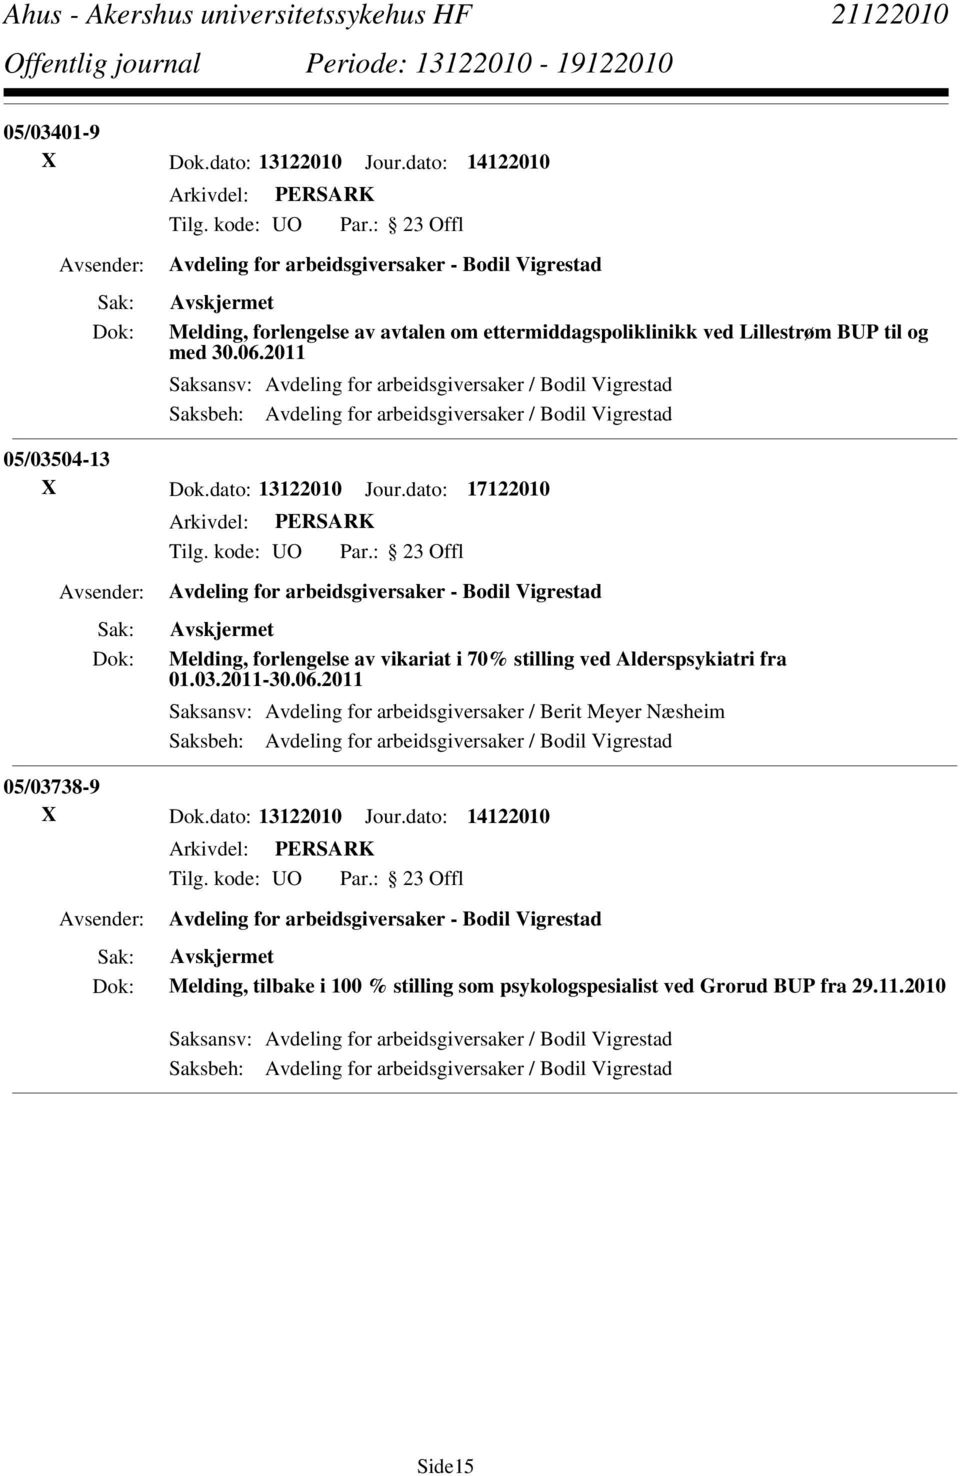 dato: 17122010 Avdeling for arbeidsgiversaker - Bodil Vigrestad Melding, forlengelse av vikariat i 70% stilling ved Alderspsykiatri fra 01.03.2011-30.06.